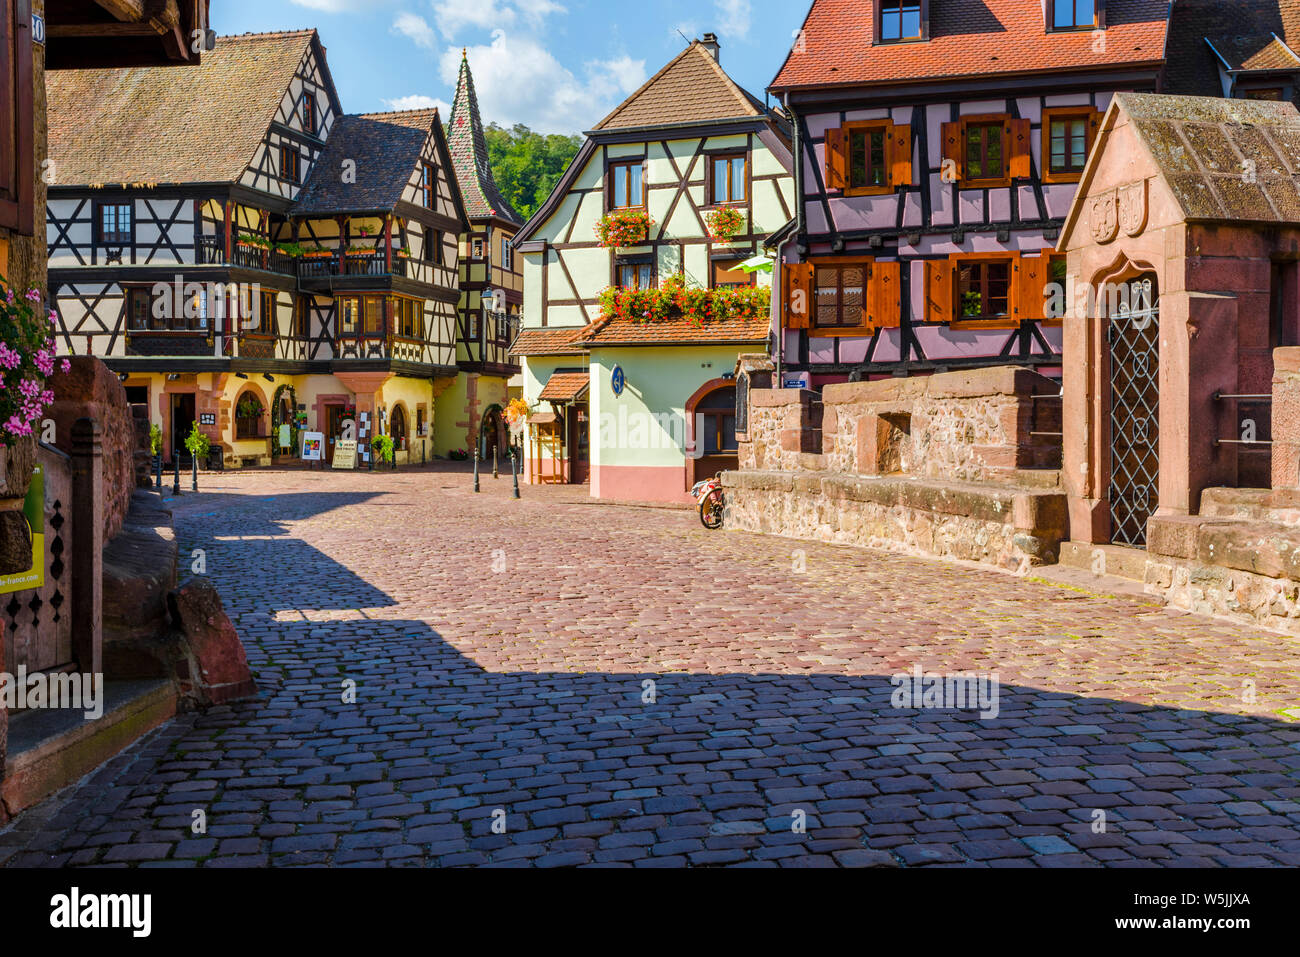 Pintoresca ciudad vieja en el centro histórico de Kaysersberg, Alsacia, Francia, casco antiguo con coloridas casas con entramados de madera y puente de piedra Foto de stock